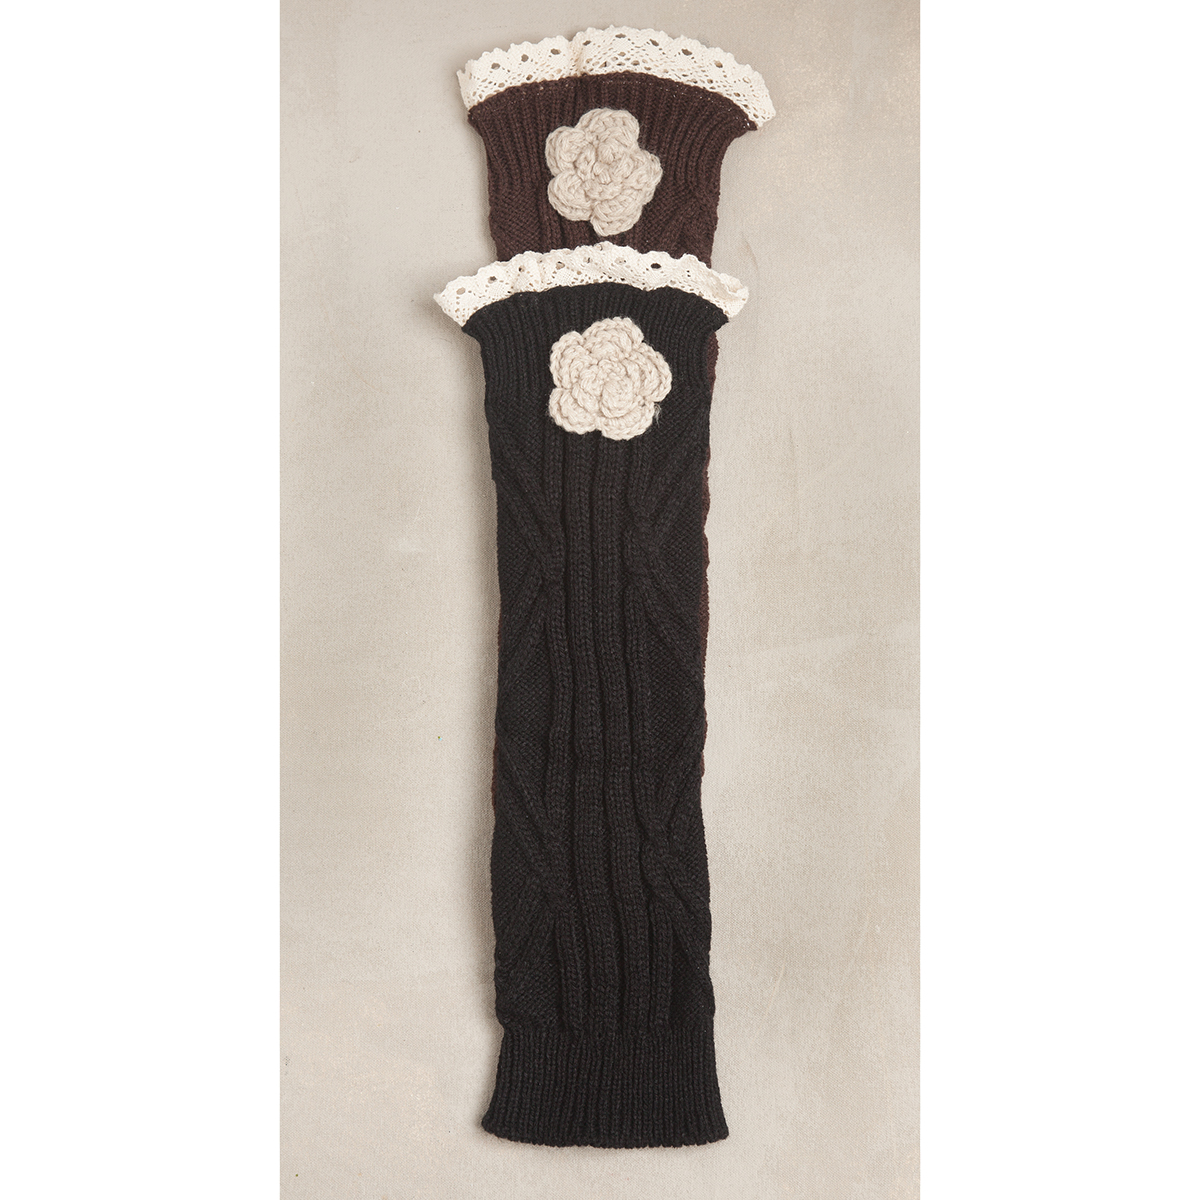 Brown Crochet Flower Boot Cuff 50sp